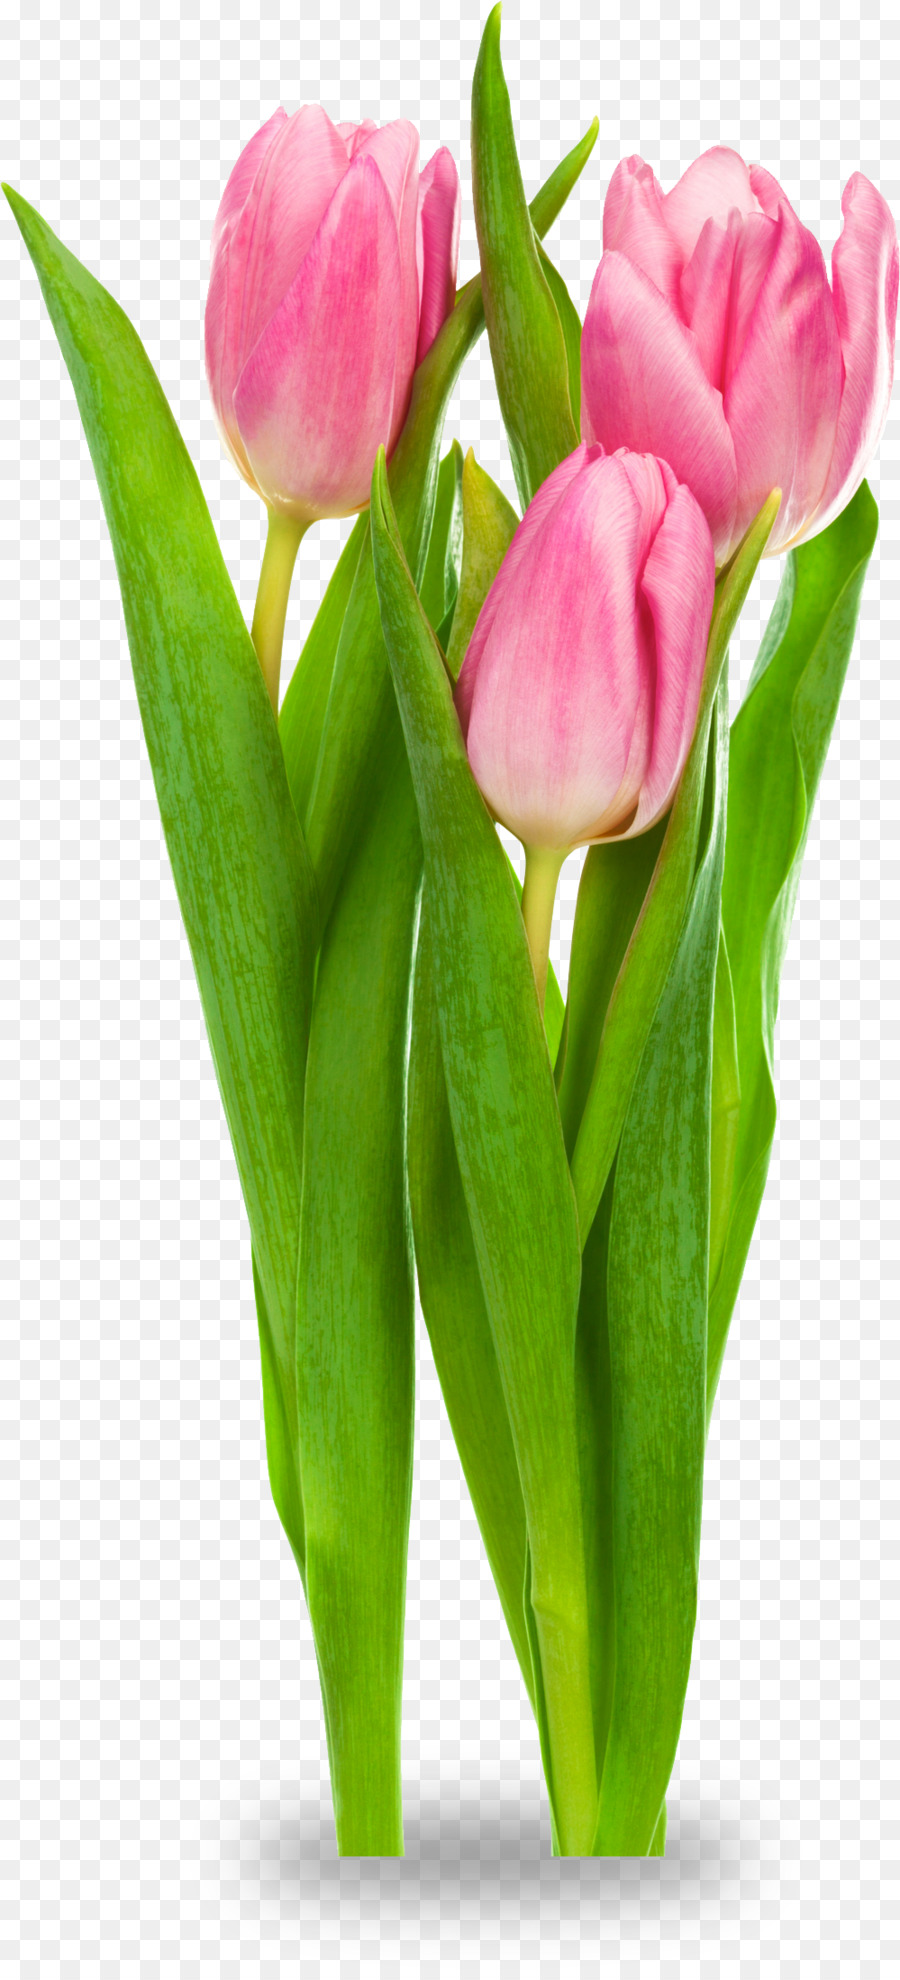 Indira Gandhi Memorial Tulip Garden Tulipa gesneriana Flower Clip art - tulip png download - 999*2186 - Free Transparent Indira Gandhi Memorial Tulip Garden png Download.